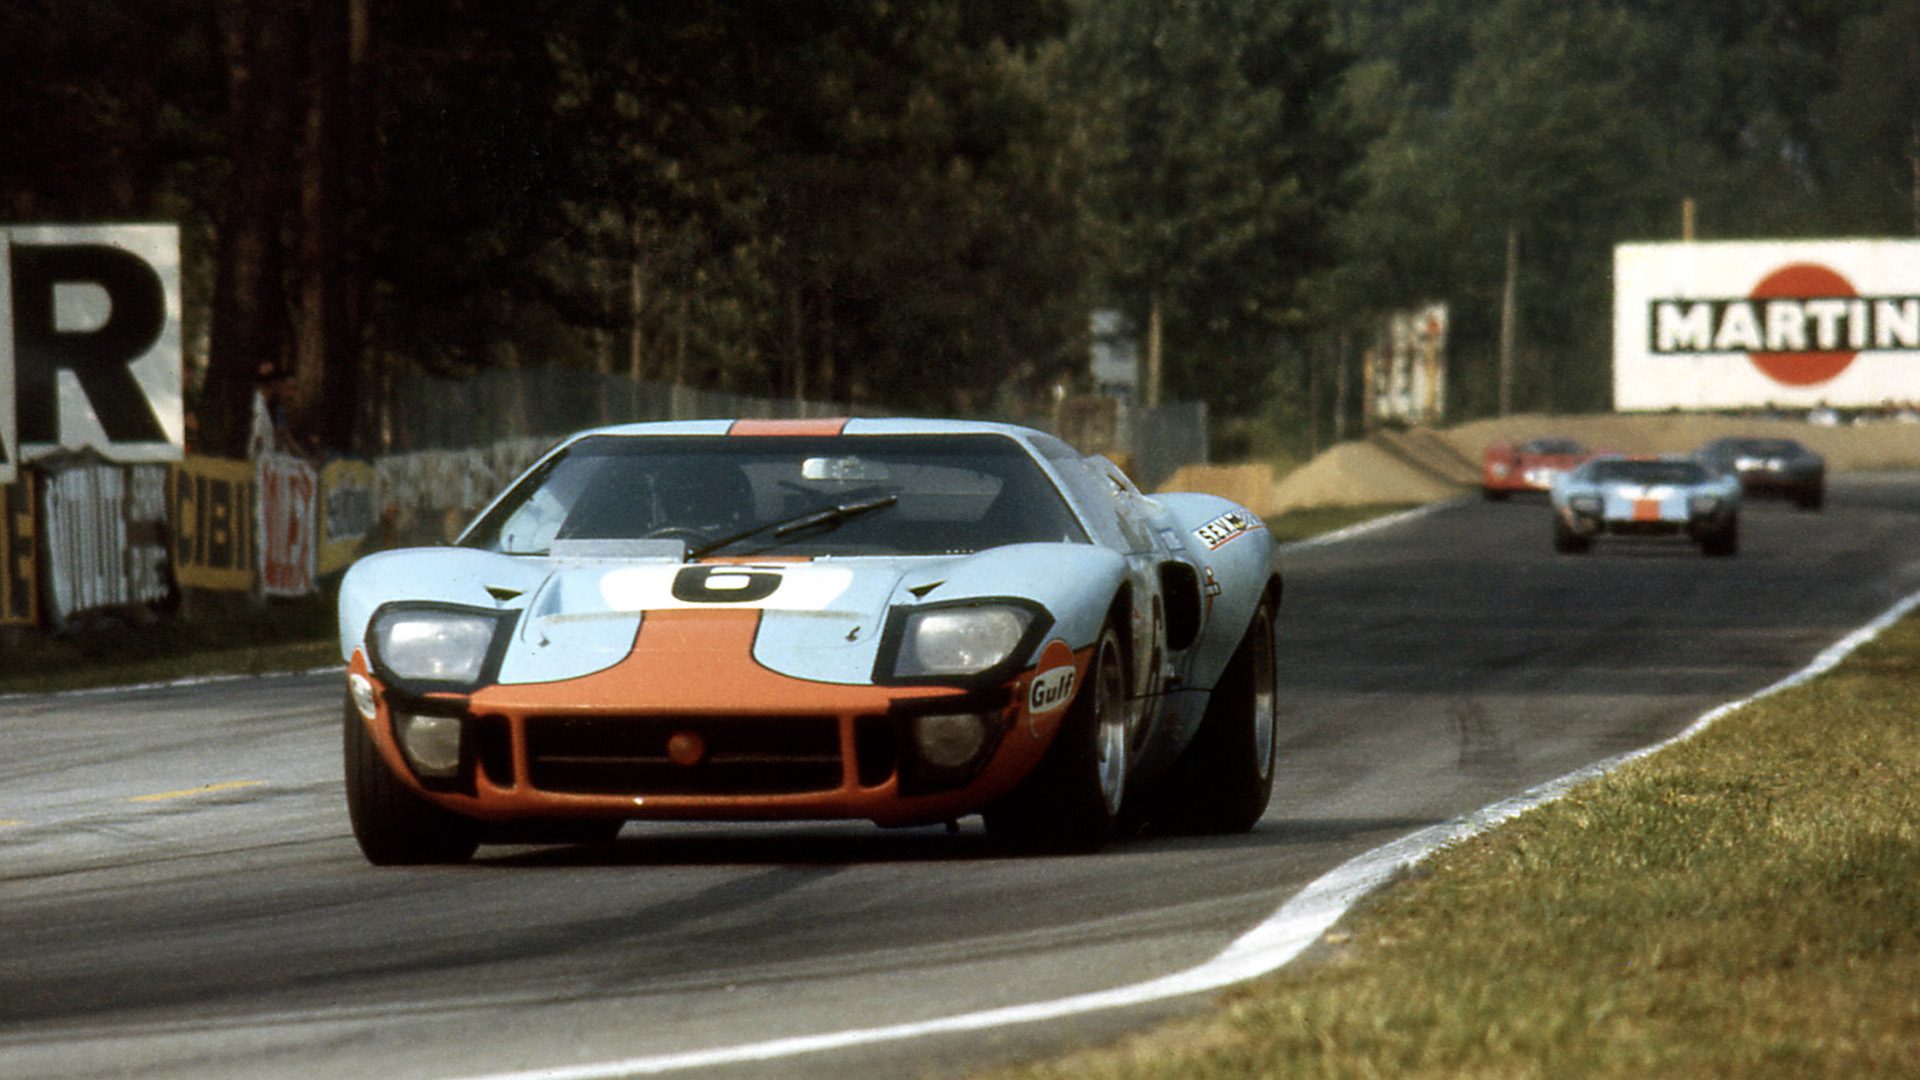 La Ford GT40 nella sua versione del 1969, quella che vinse per ultima la 24 Ore di Le Mans prima del cambio di regolamento che la escluse dalla categoria